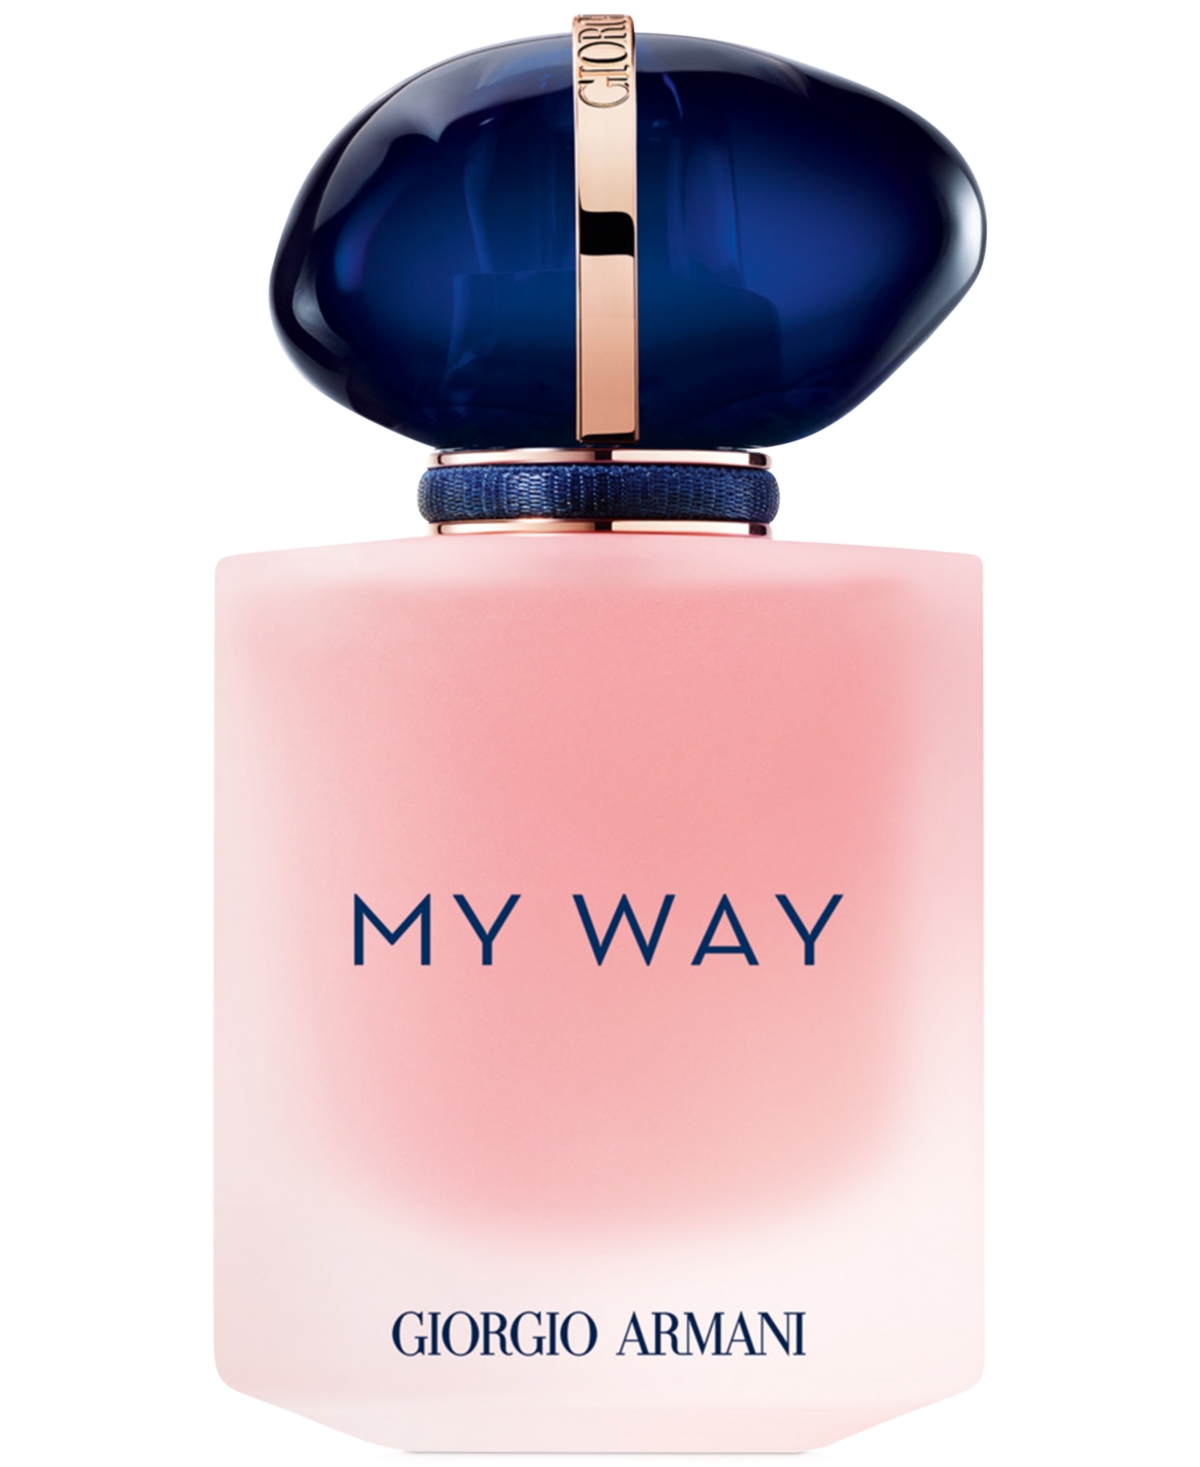 Armani Beauty My Way Floral Eau de Parfum, 1.7 oz.